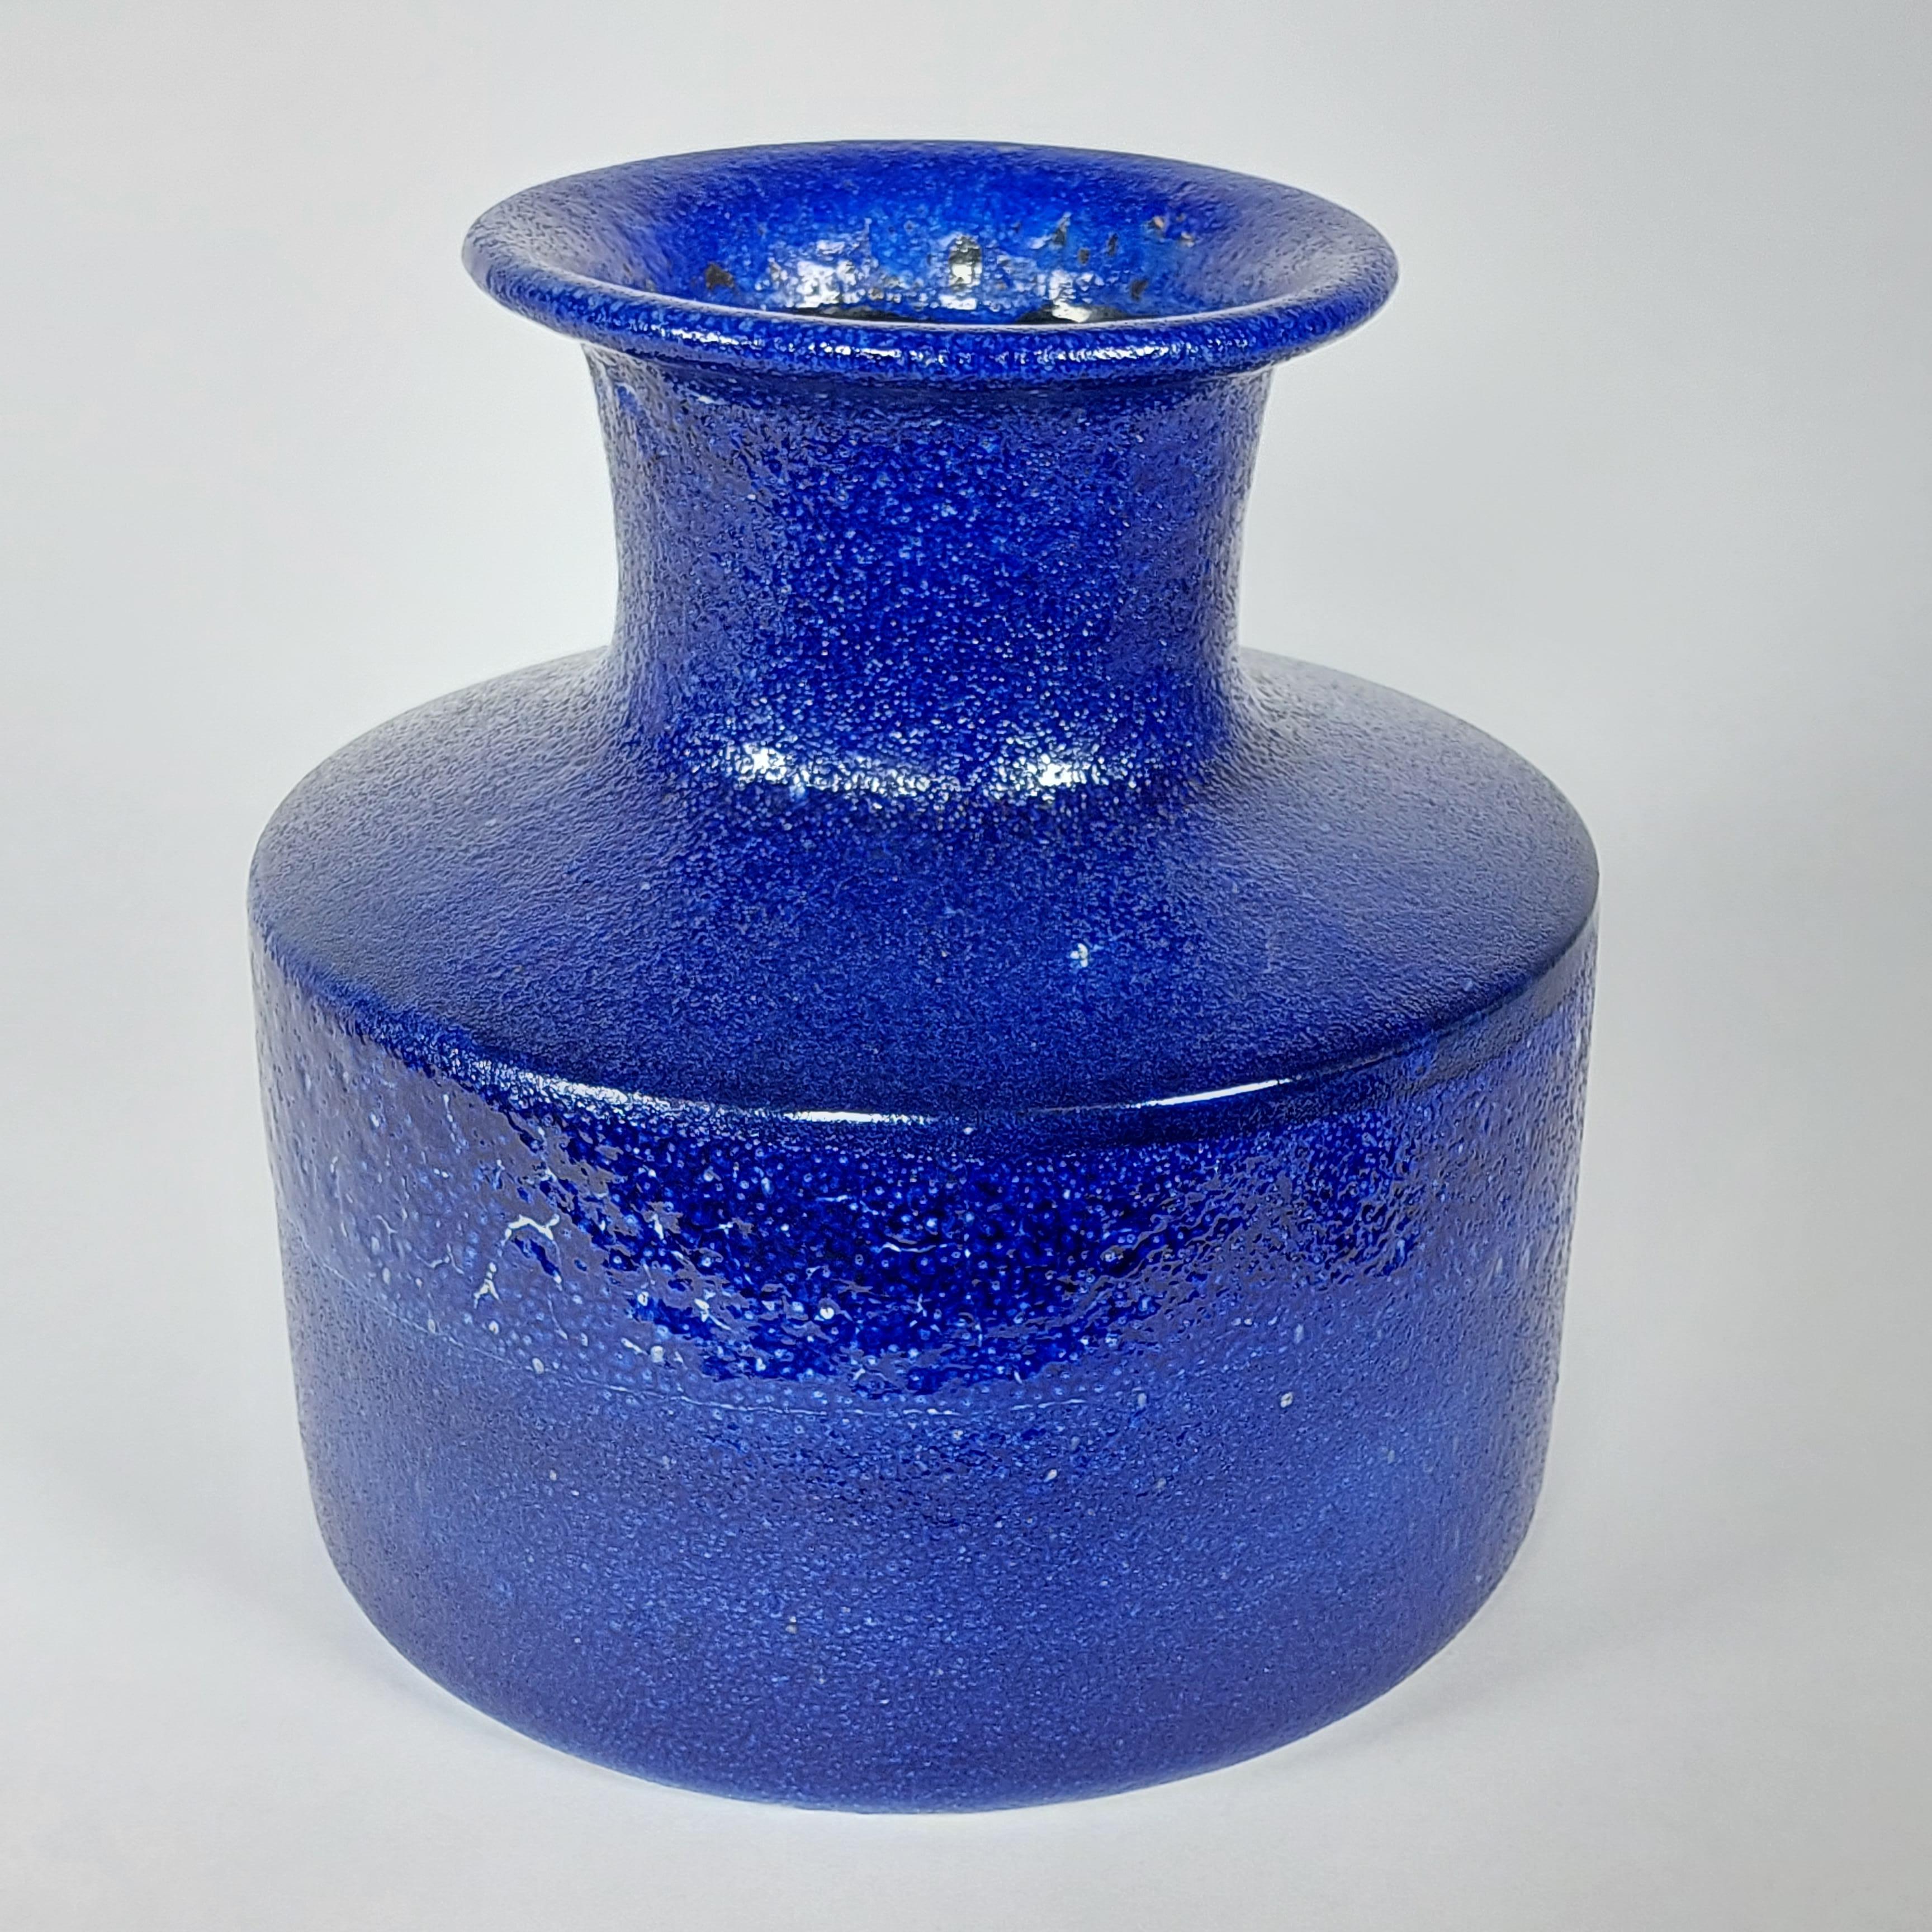 Vase bleu vibrant de l'artiste et potier suisse André Freymond. Pièce de taille moyenne datant de la fin des années 1950 ou du début des années 1960. Les pièces de Freymond sont souvent uniques, le penchant de l'artiste étant de faire rarement deux